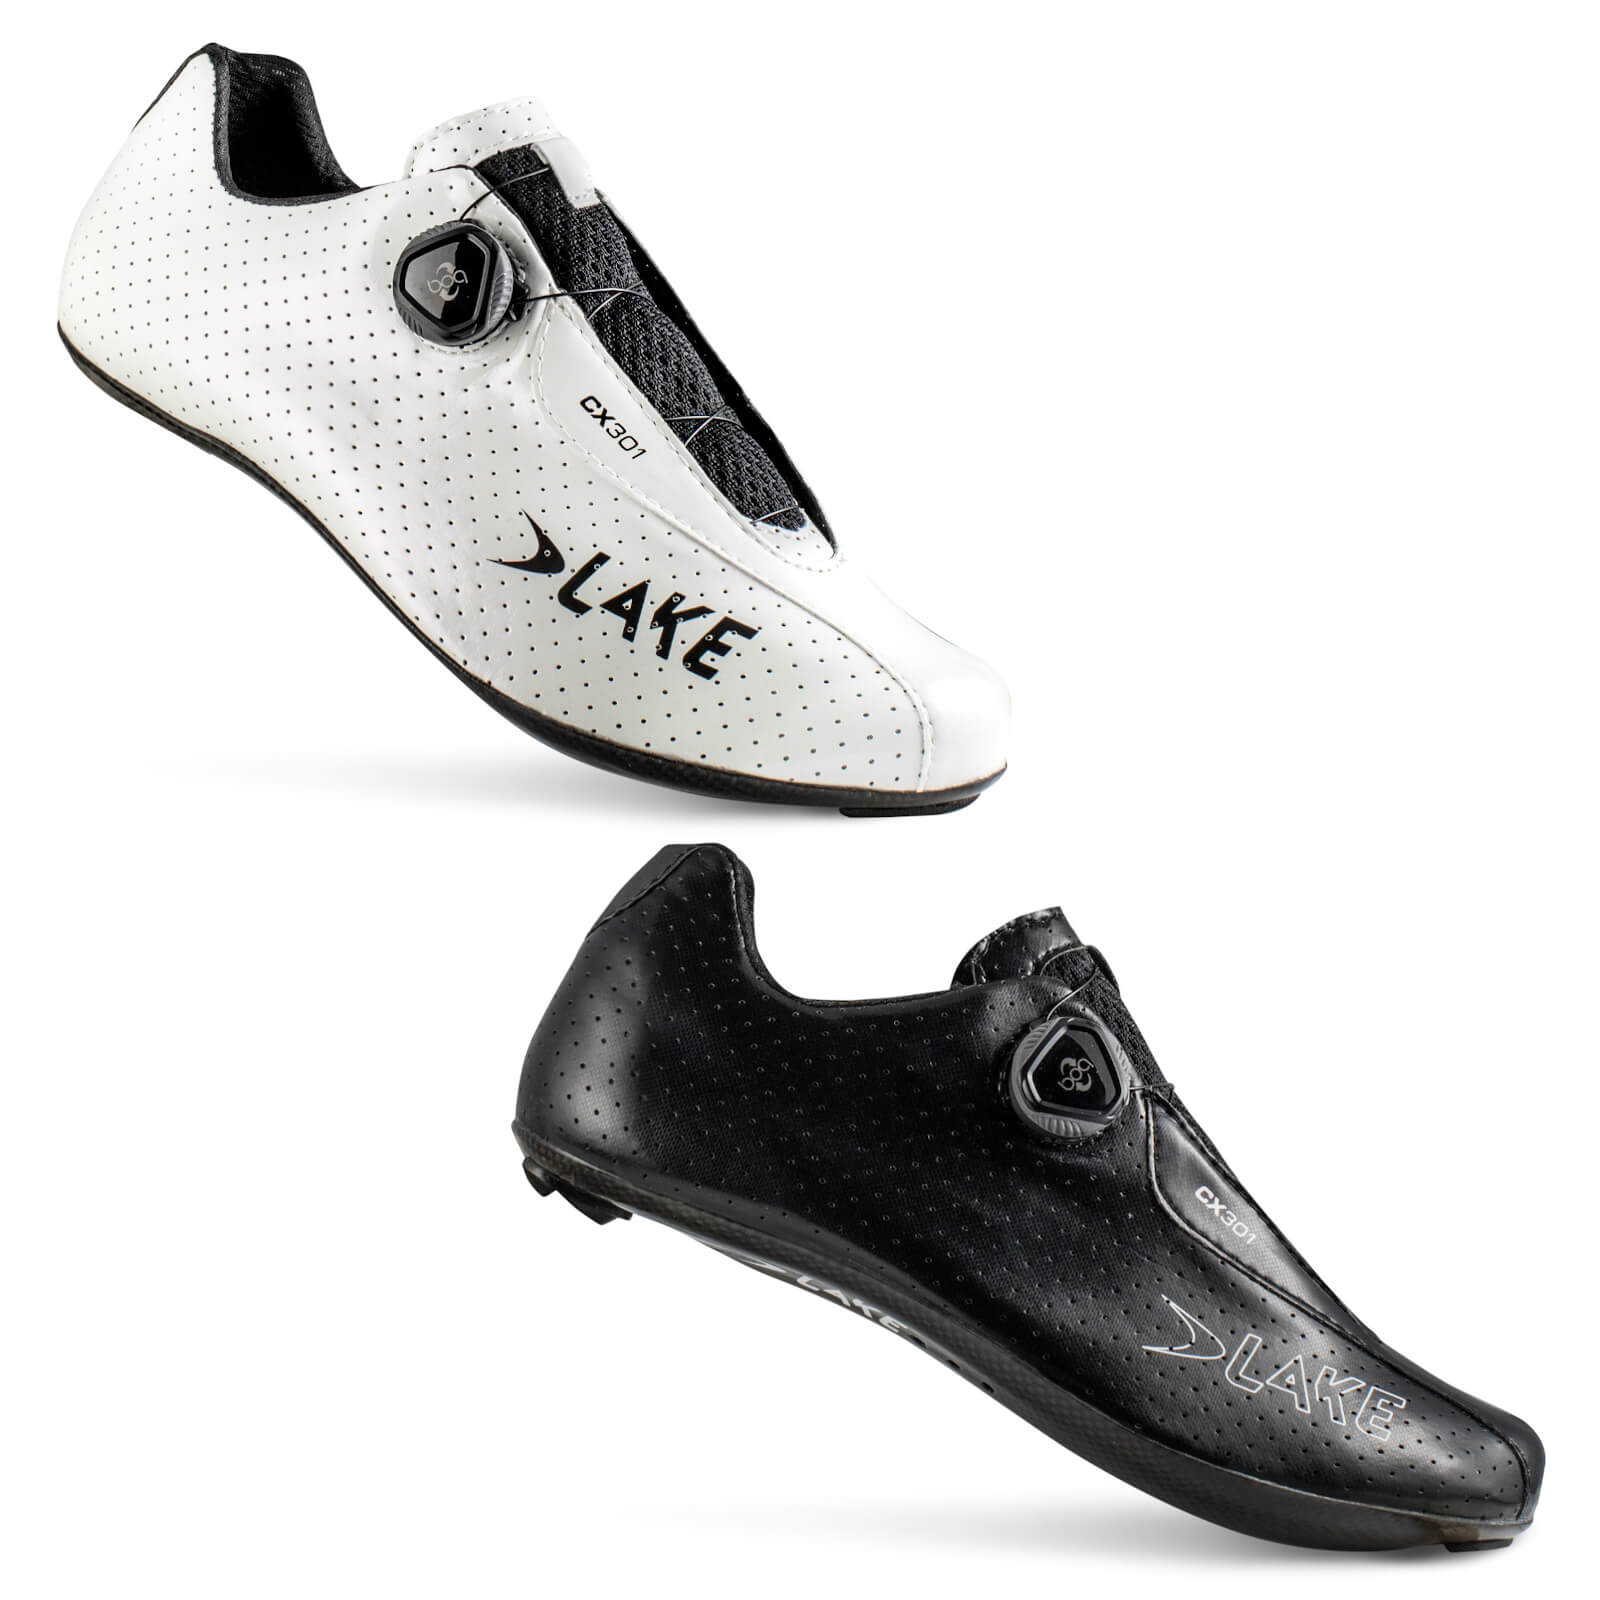 Lake CX301 Road Shoes - EU 43 - White